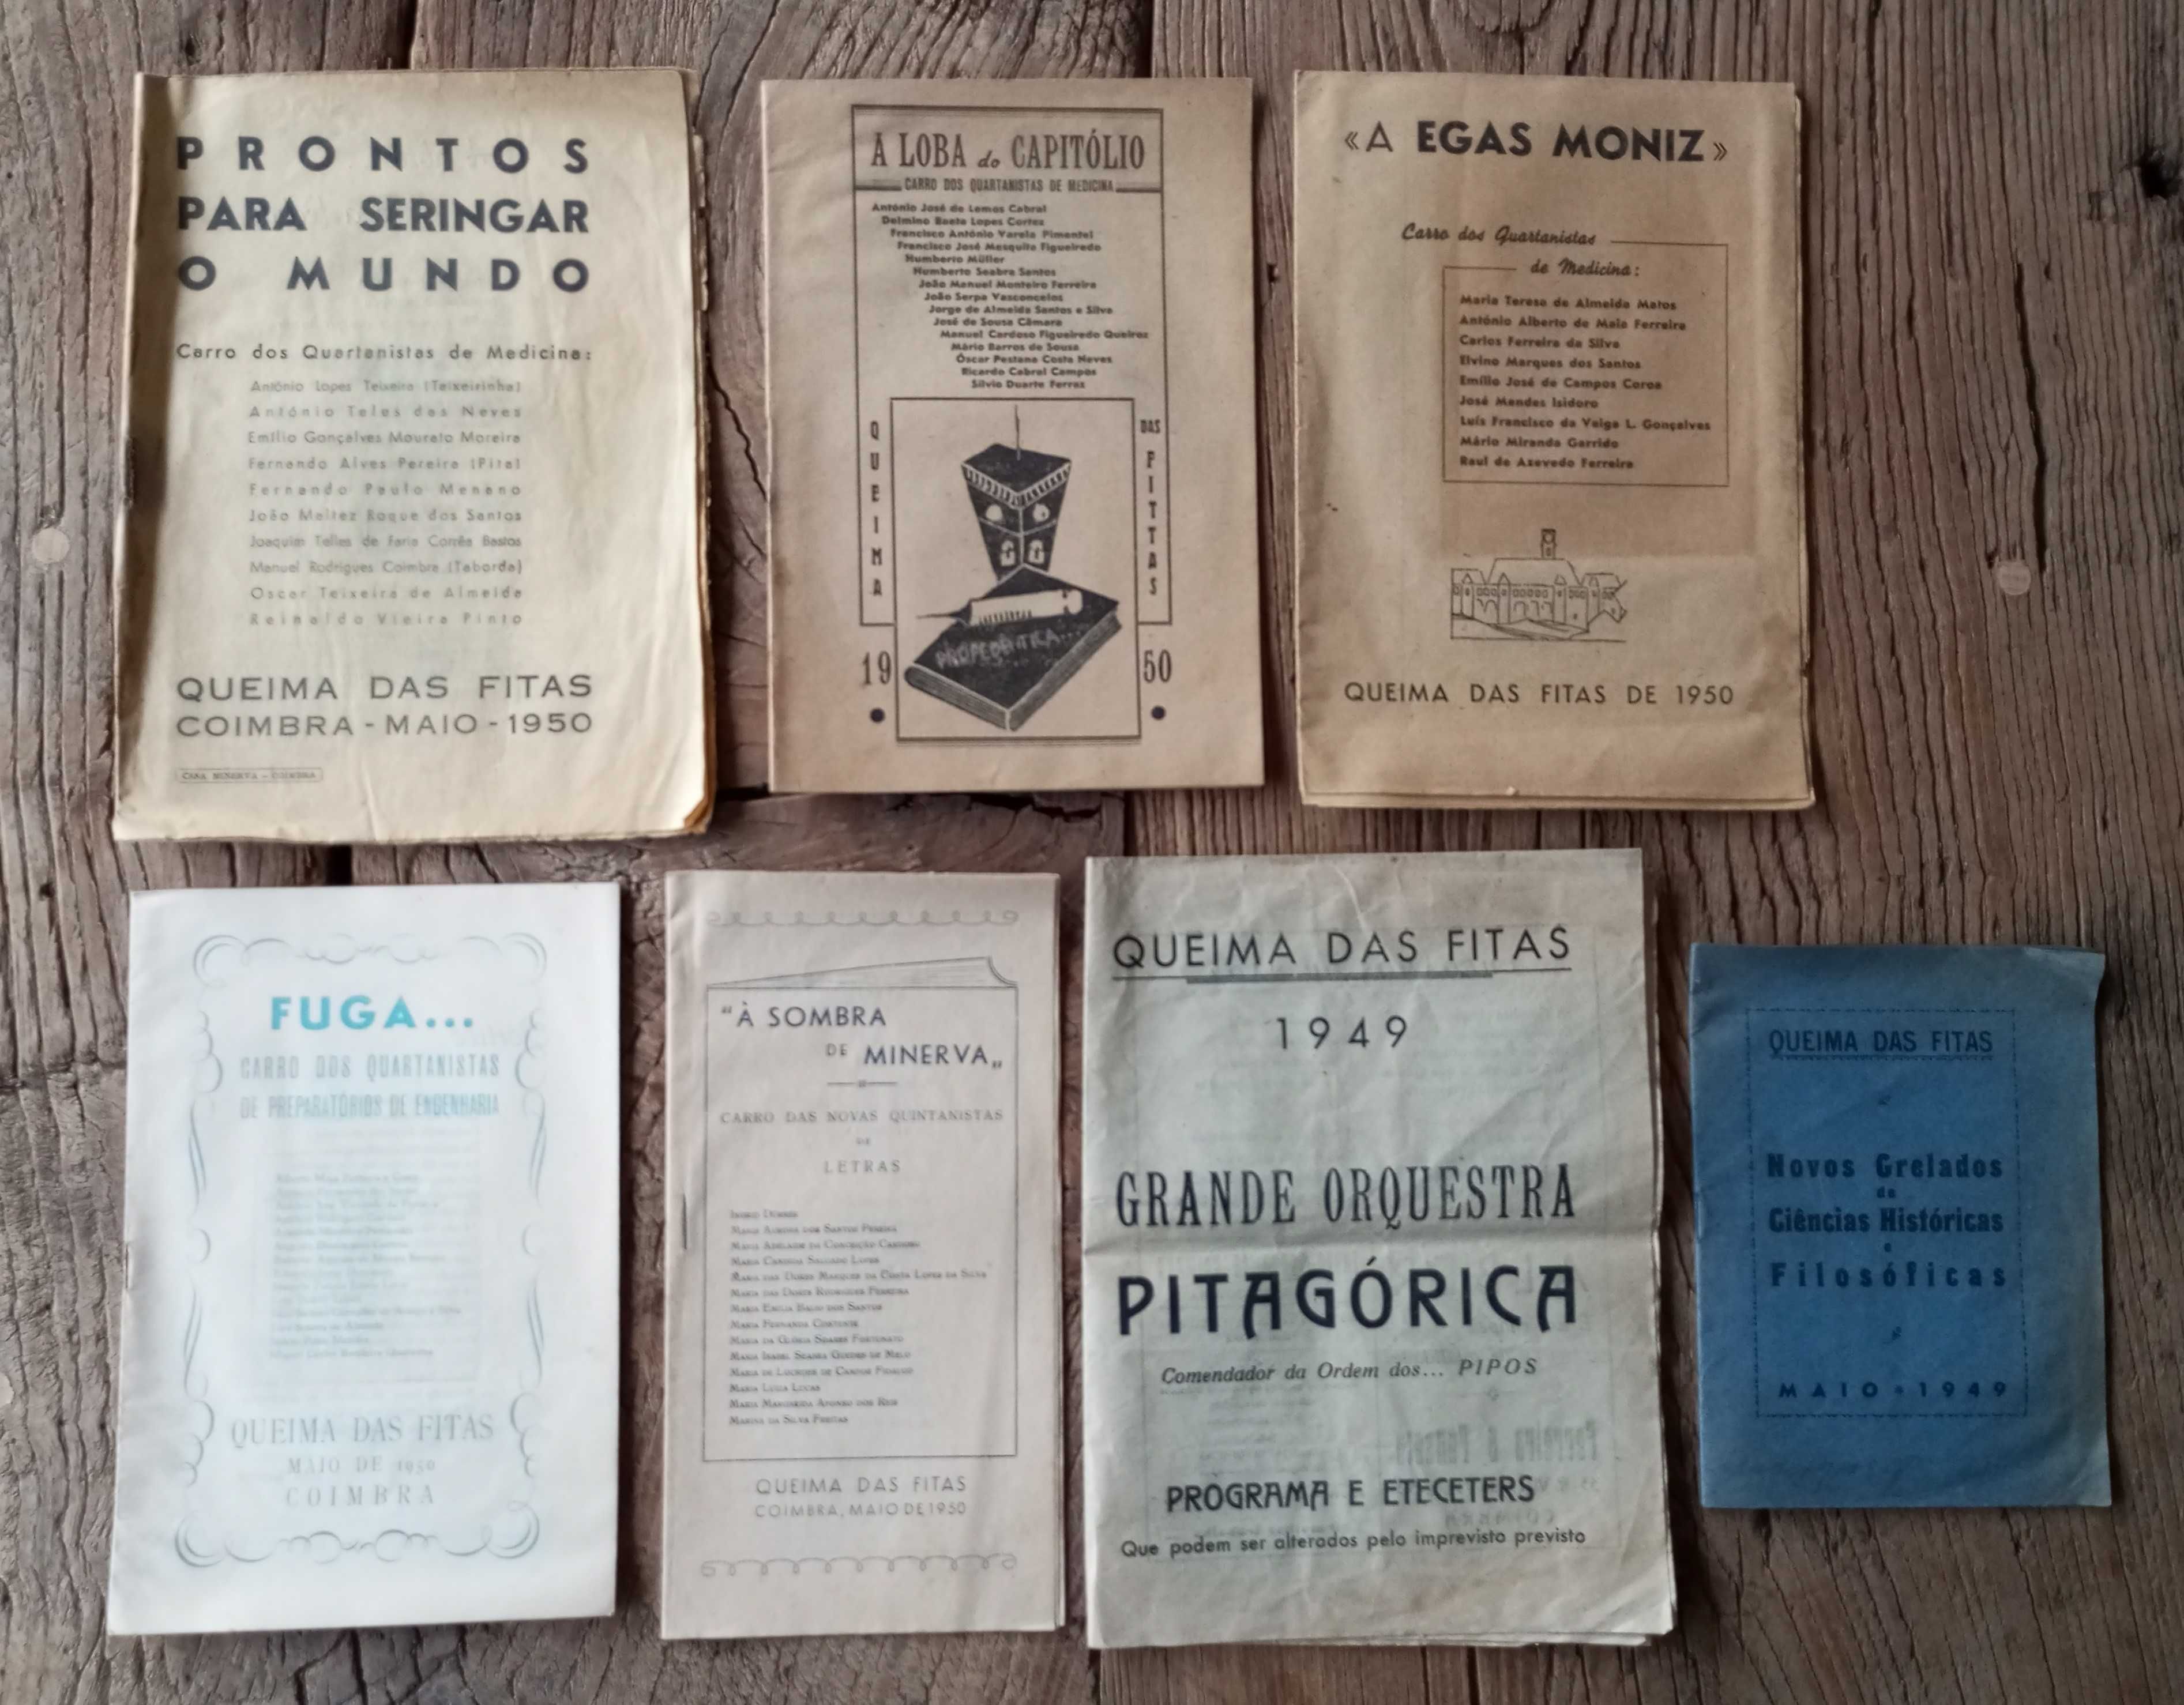 Queima das fitas Coimbra anos de 1949 e 1950